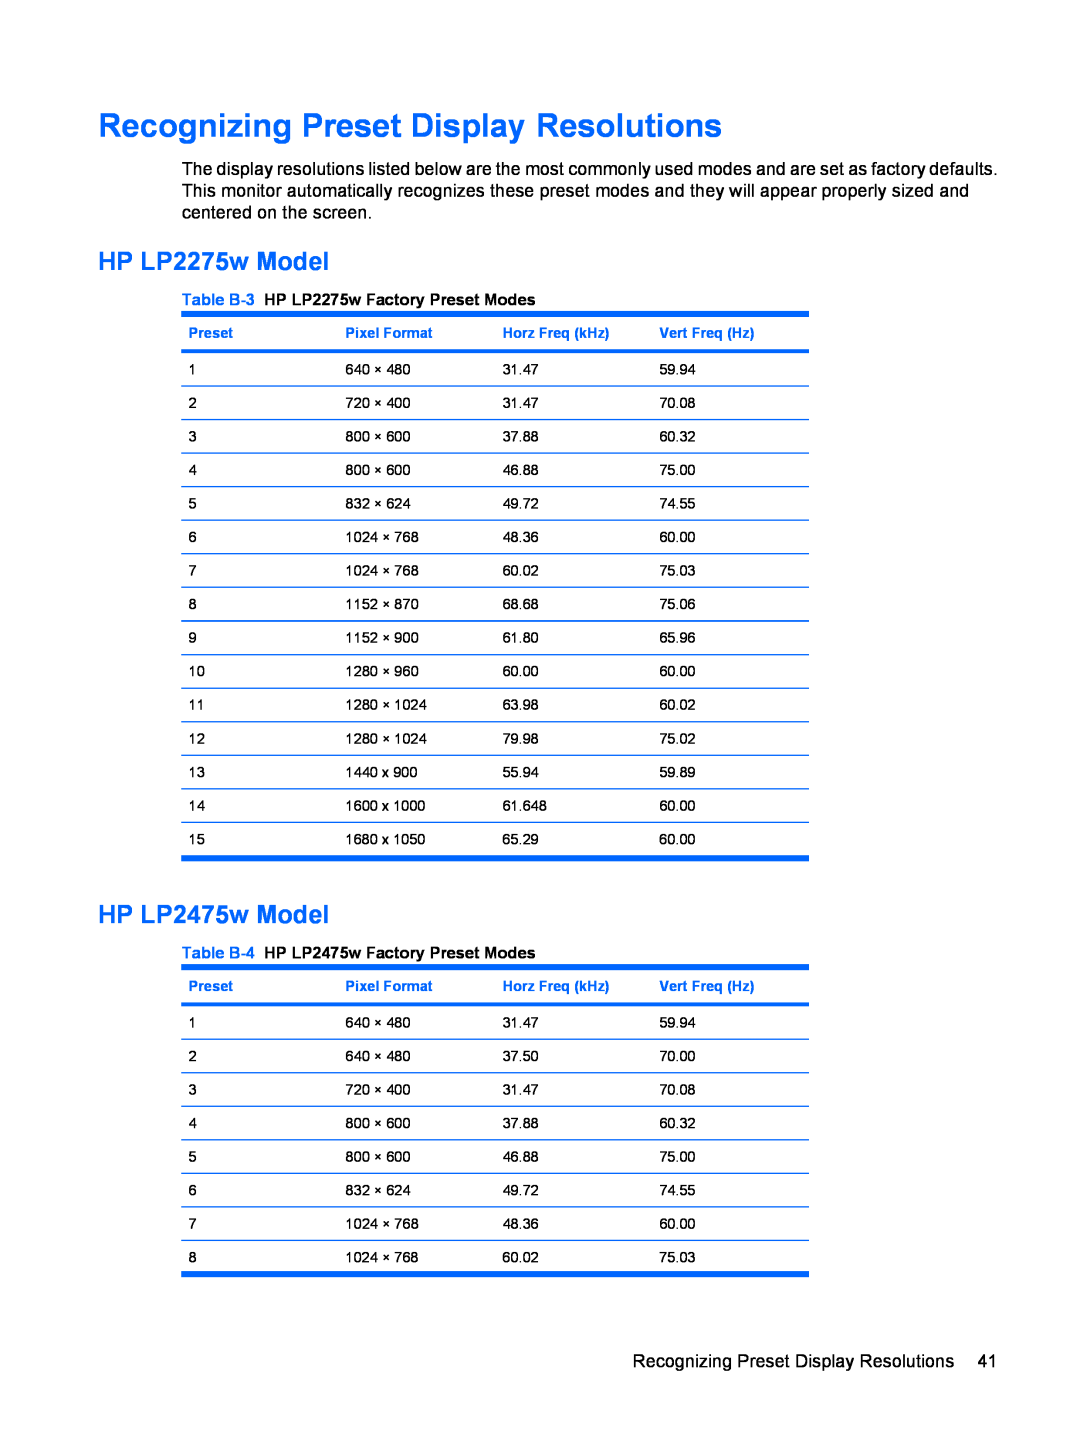 HP manual Recognizing Preset Display Resolutions, HP LP2275w Model, HP LP2475w Model 